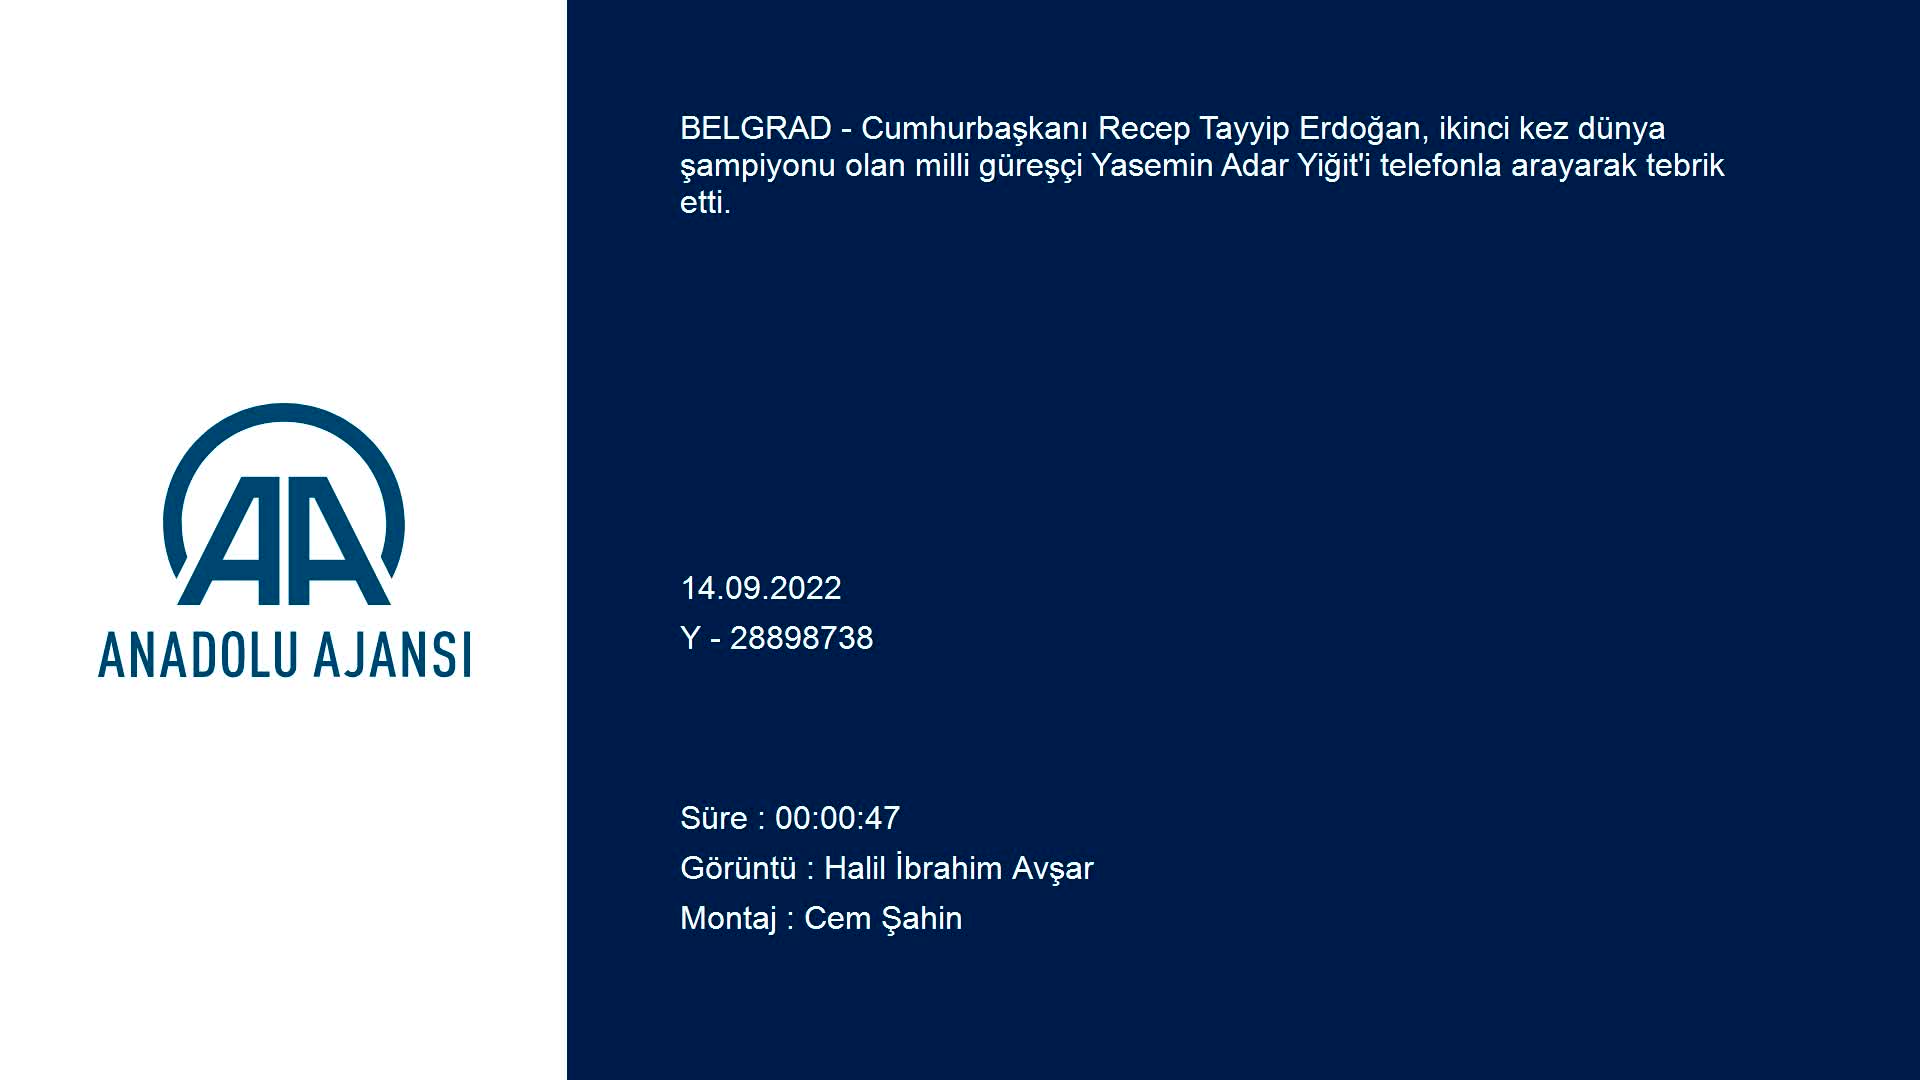 Cumhurbaşkanı Erdoğan’dan dünya şampiyonu Yasemin Adar Yiğit’e tebrik telefonu